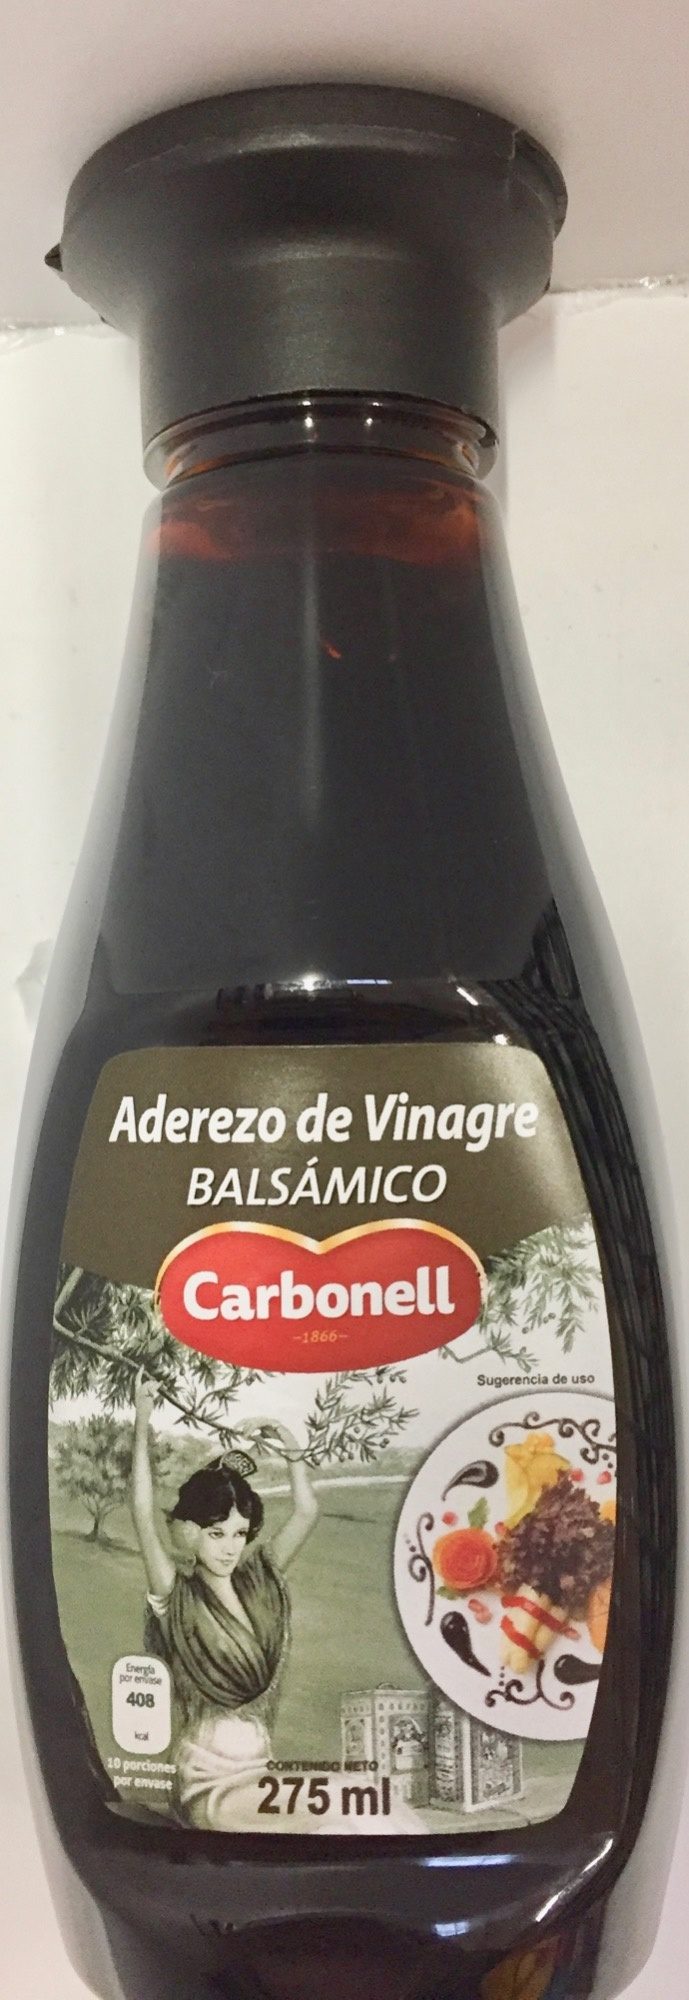 Aderezo de vinagre balsamico - Producto